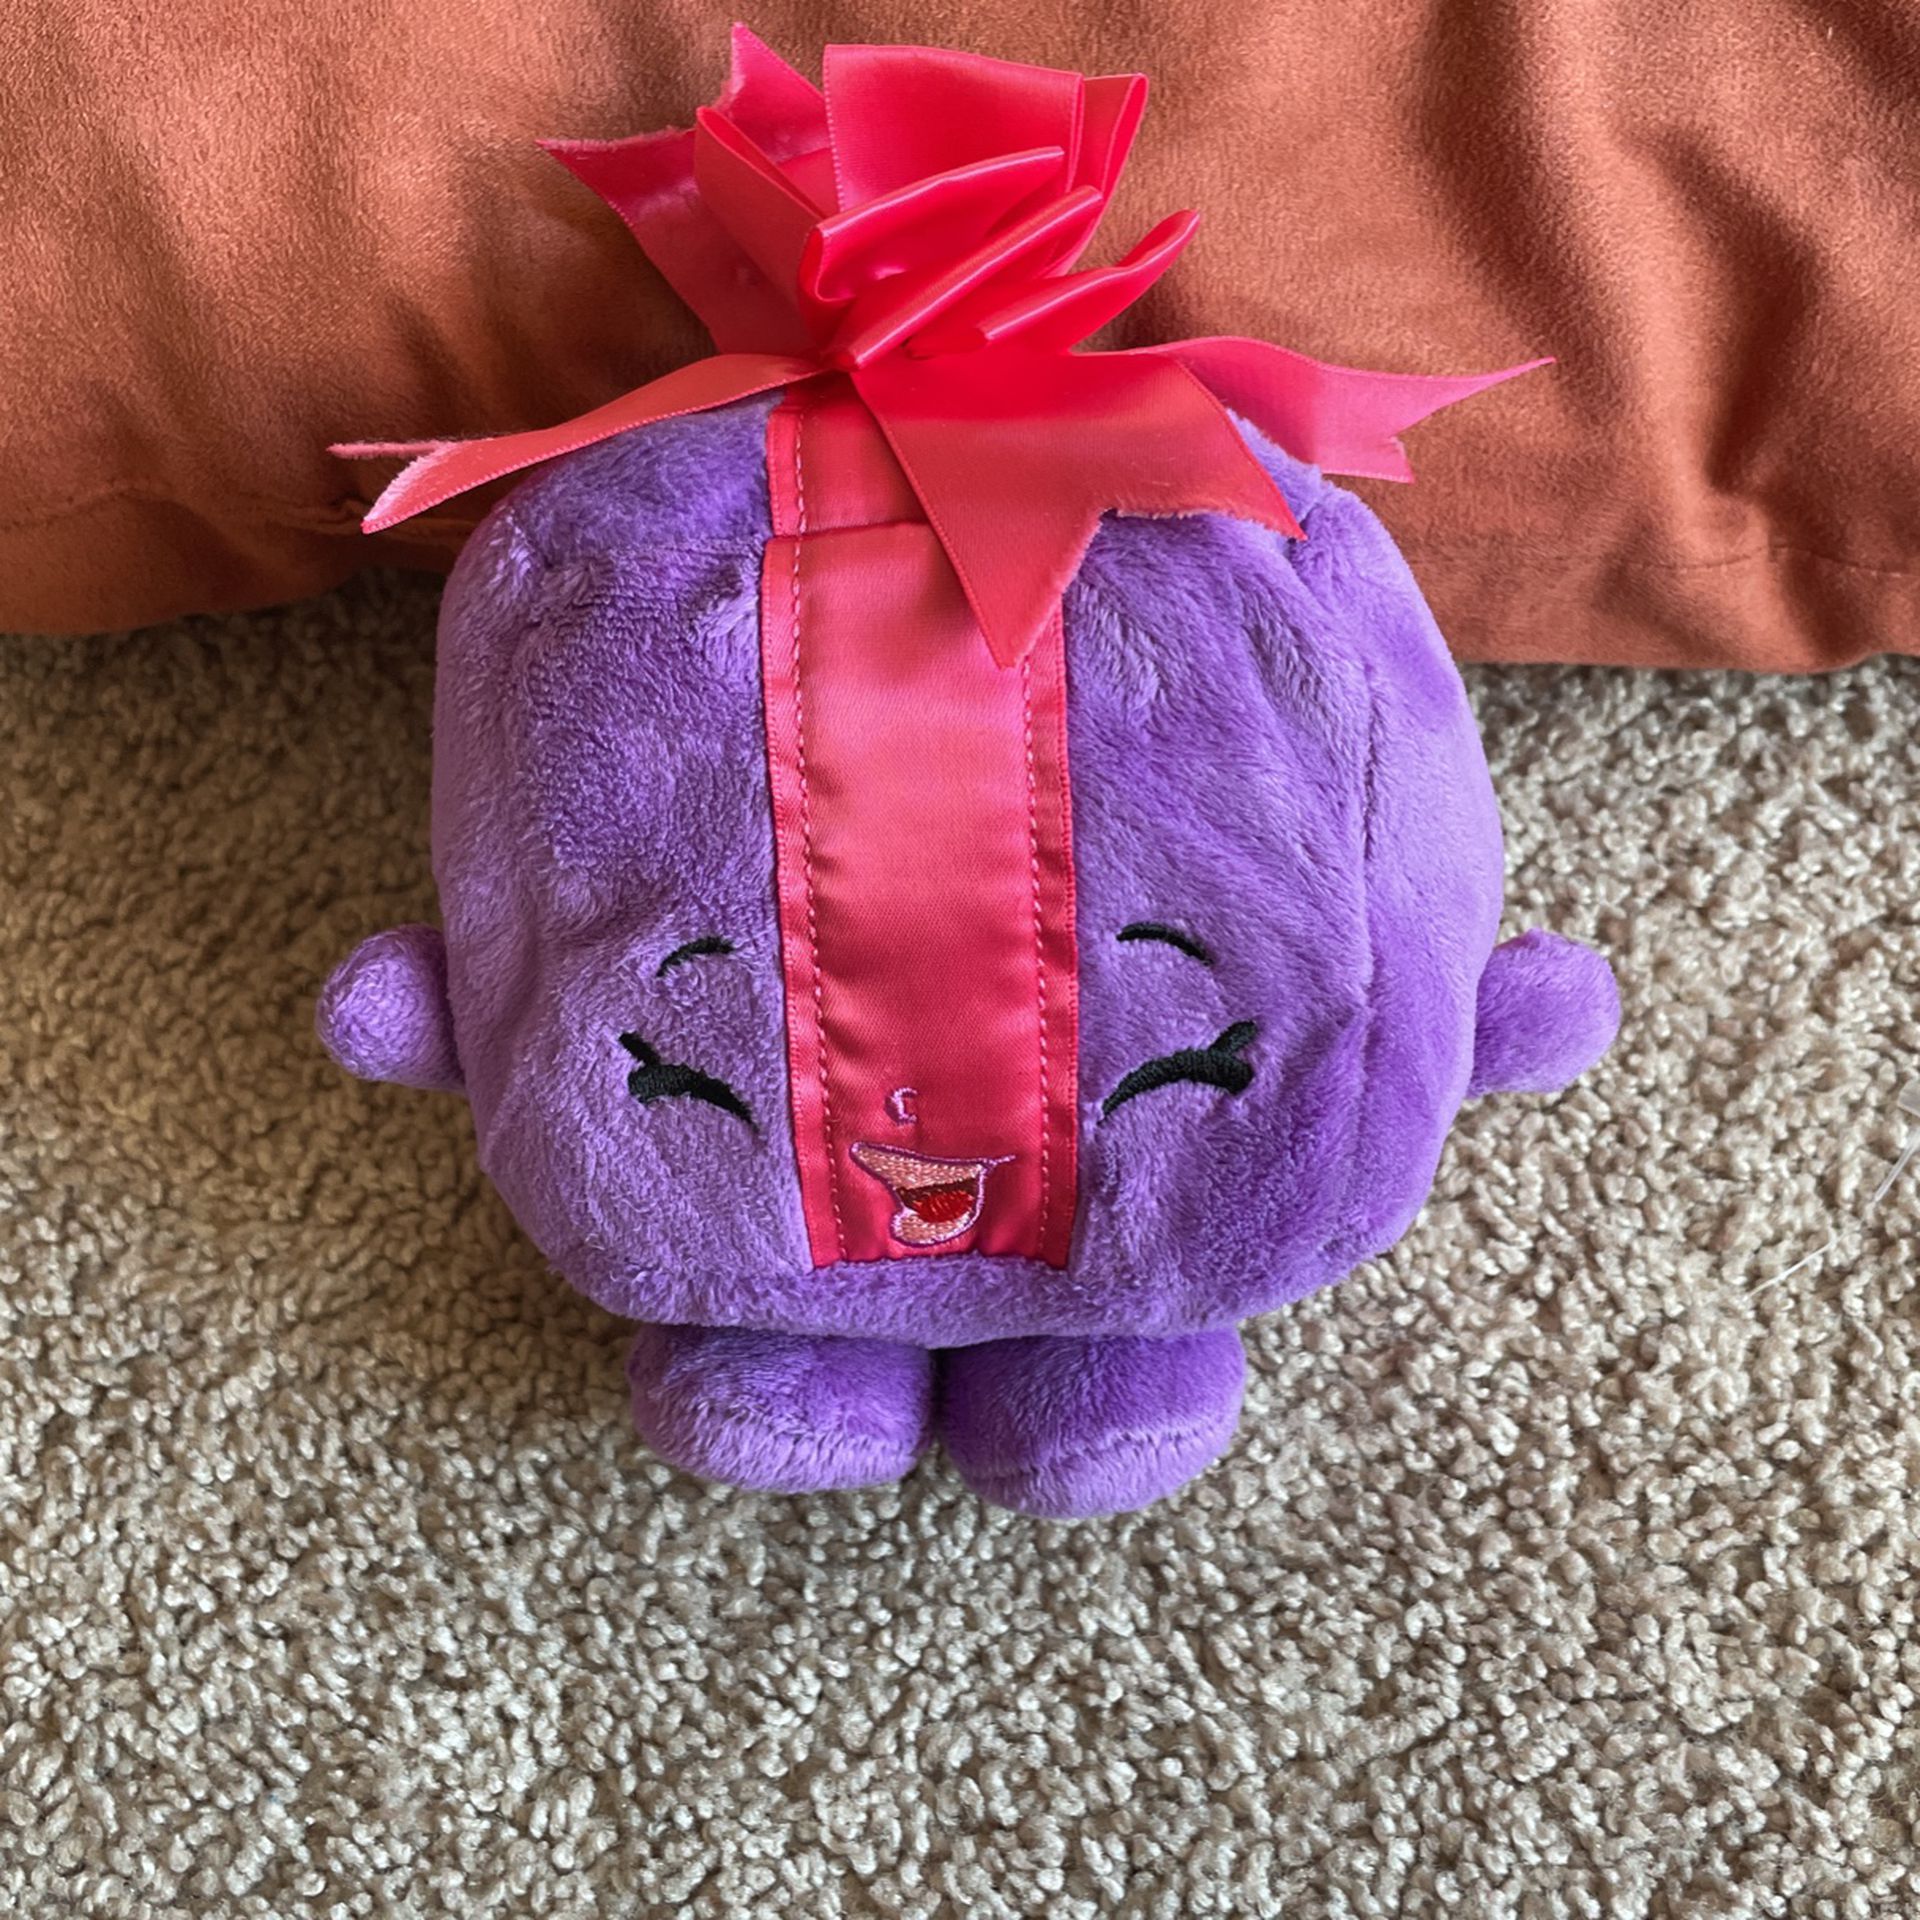 Miss Pressy purple shopkins plush perfect kids present 